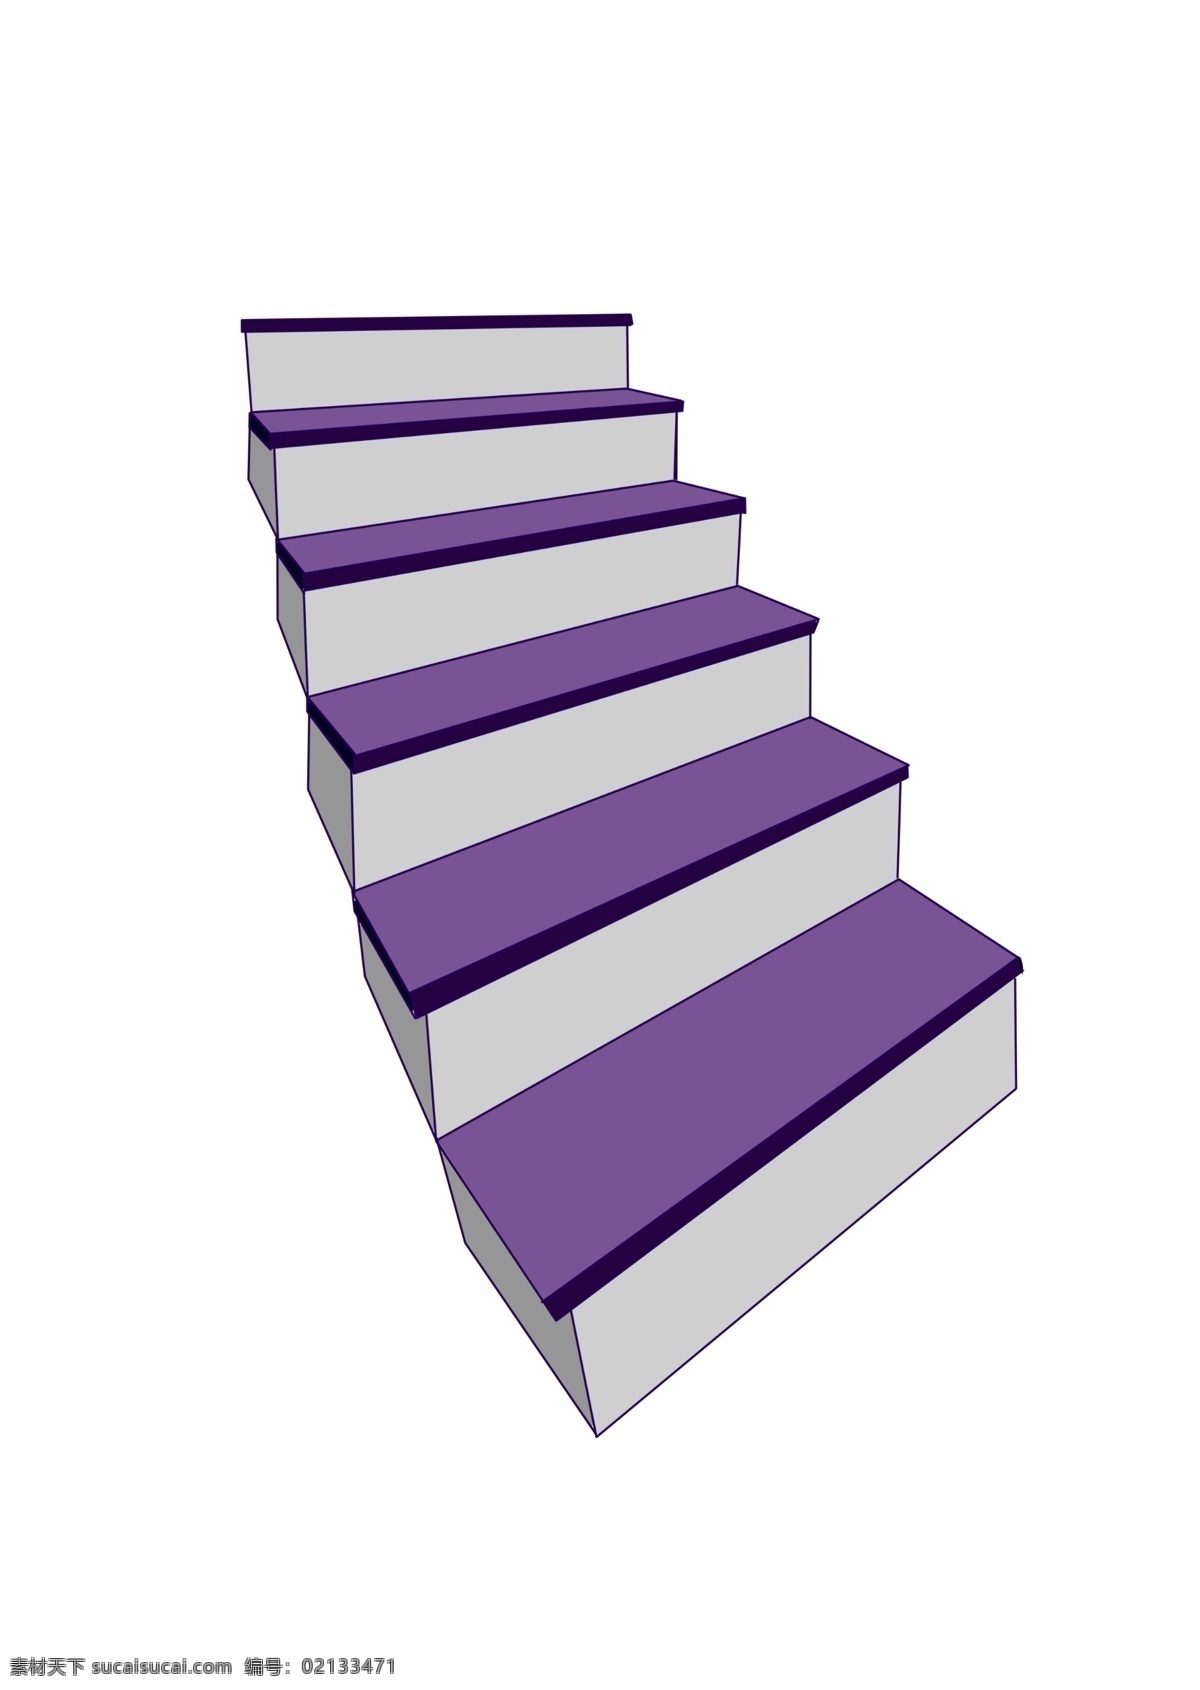 紫色 楼梯 装饰 插画 紫色的楼梯 漂亮的楼梯 立体楼梯 精美楼梯 卡通楼梯 楼梯装饰 楼梯插画